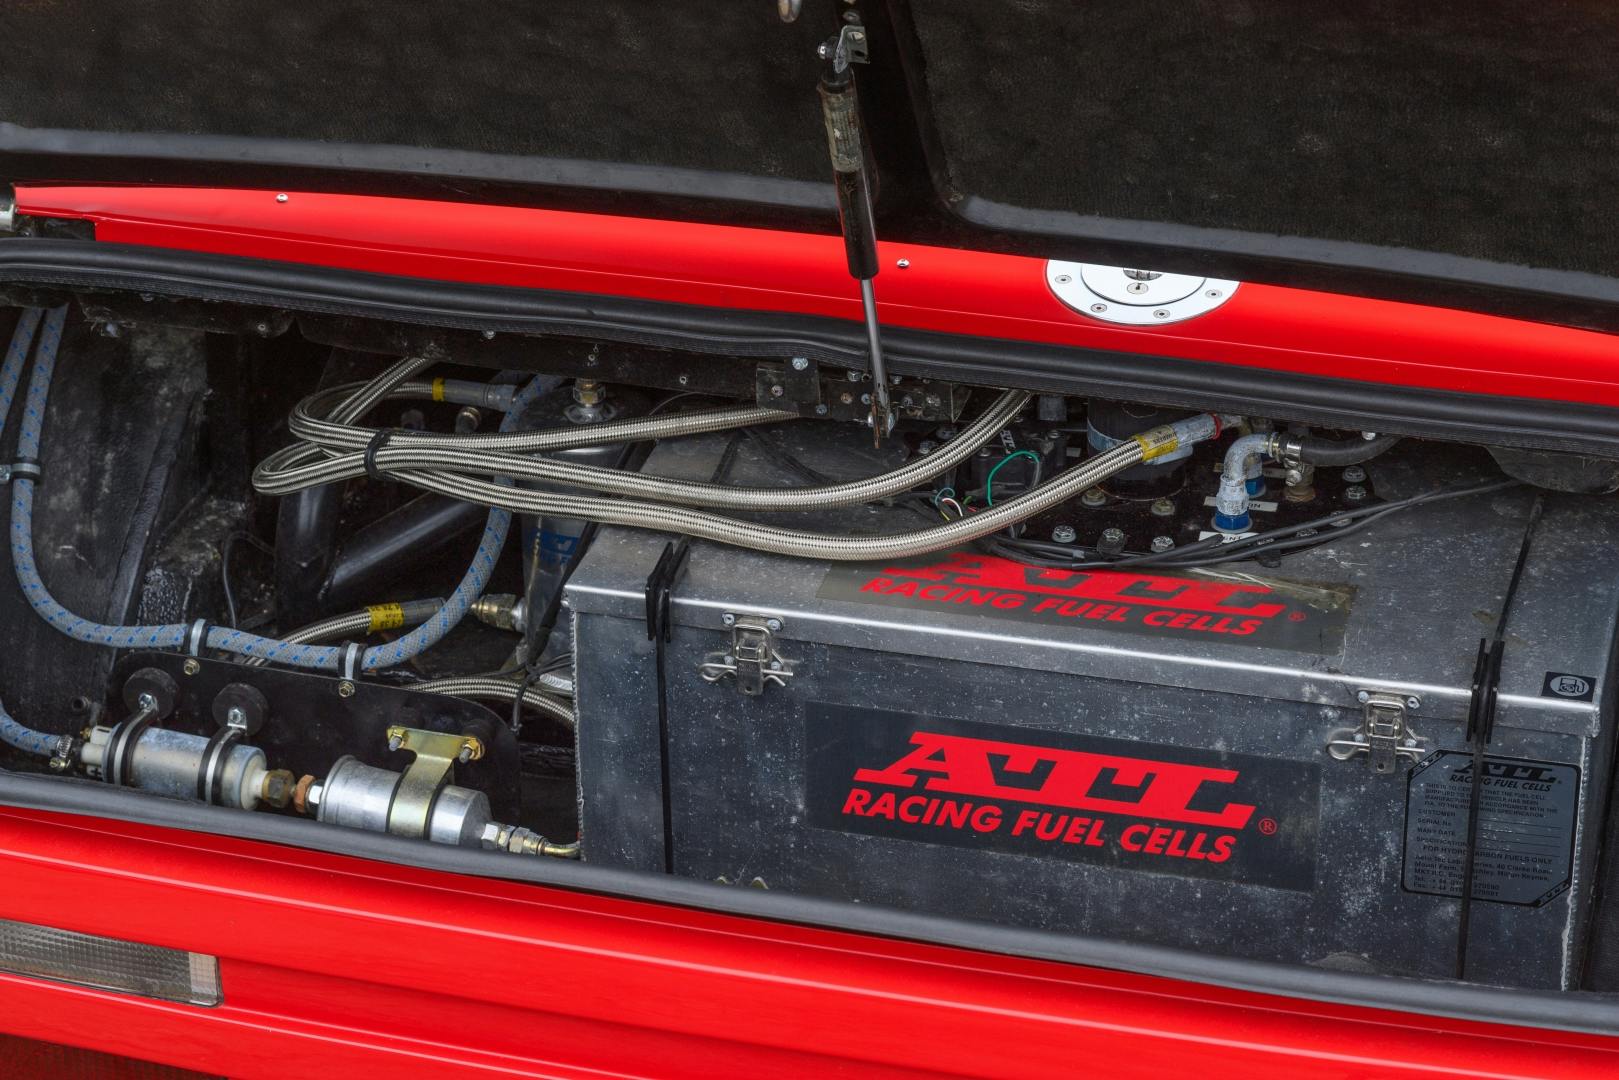 1986 Aston Martin V8 Vantage Zagato Rowan Atkinson Mr Bean fuel cell